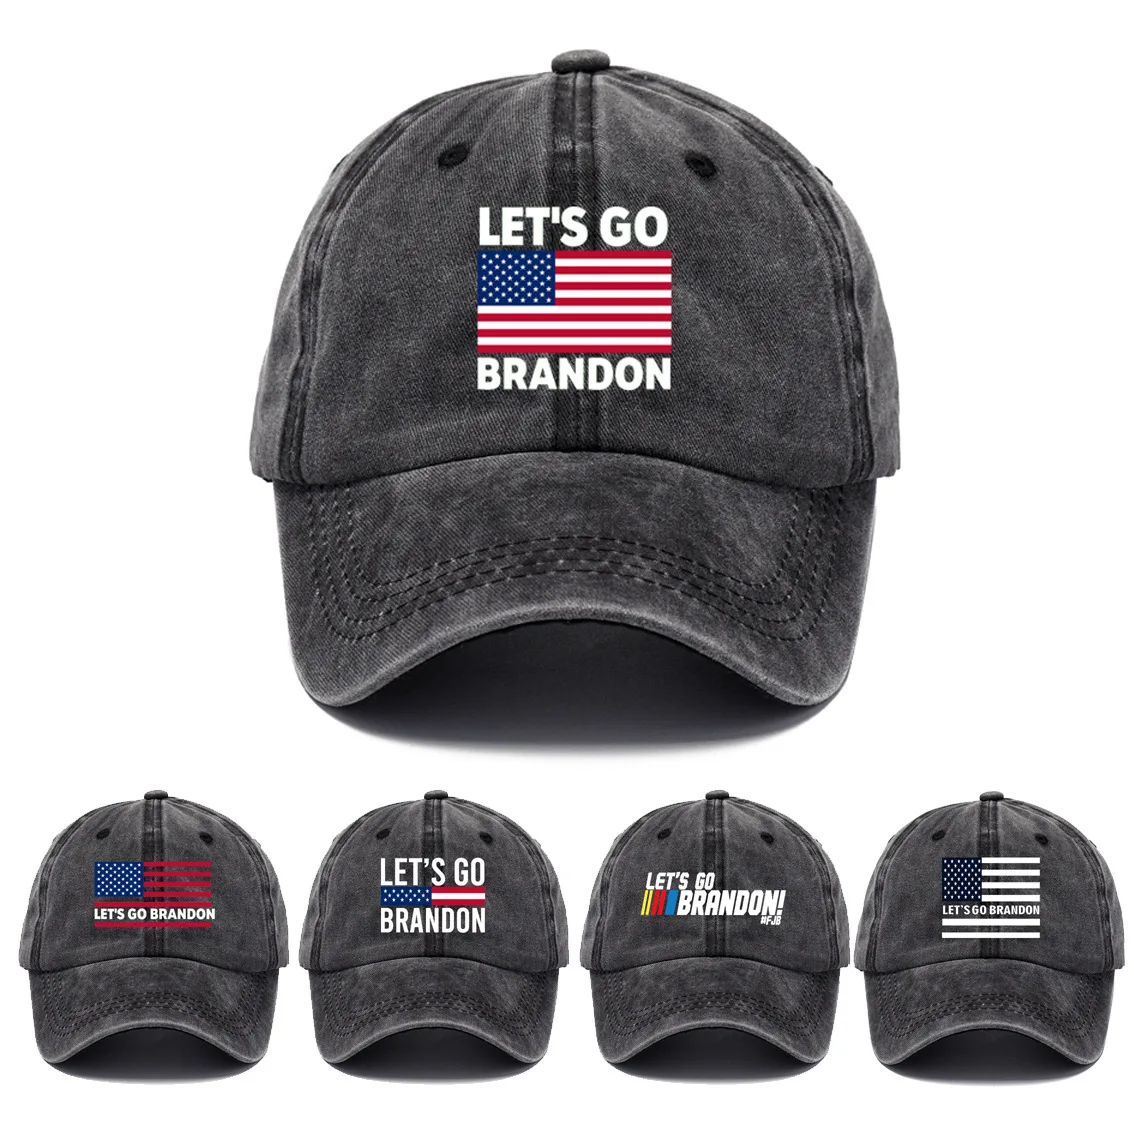 

Let’s Go Brandon FJB Dad Hat Baseball Cap for Men Funny Washed Denim Adjustable Hats Funny Washed Denim Hats Gorras Snapback